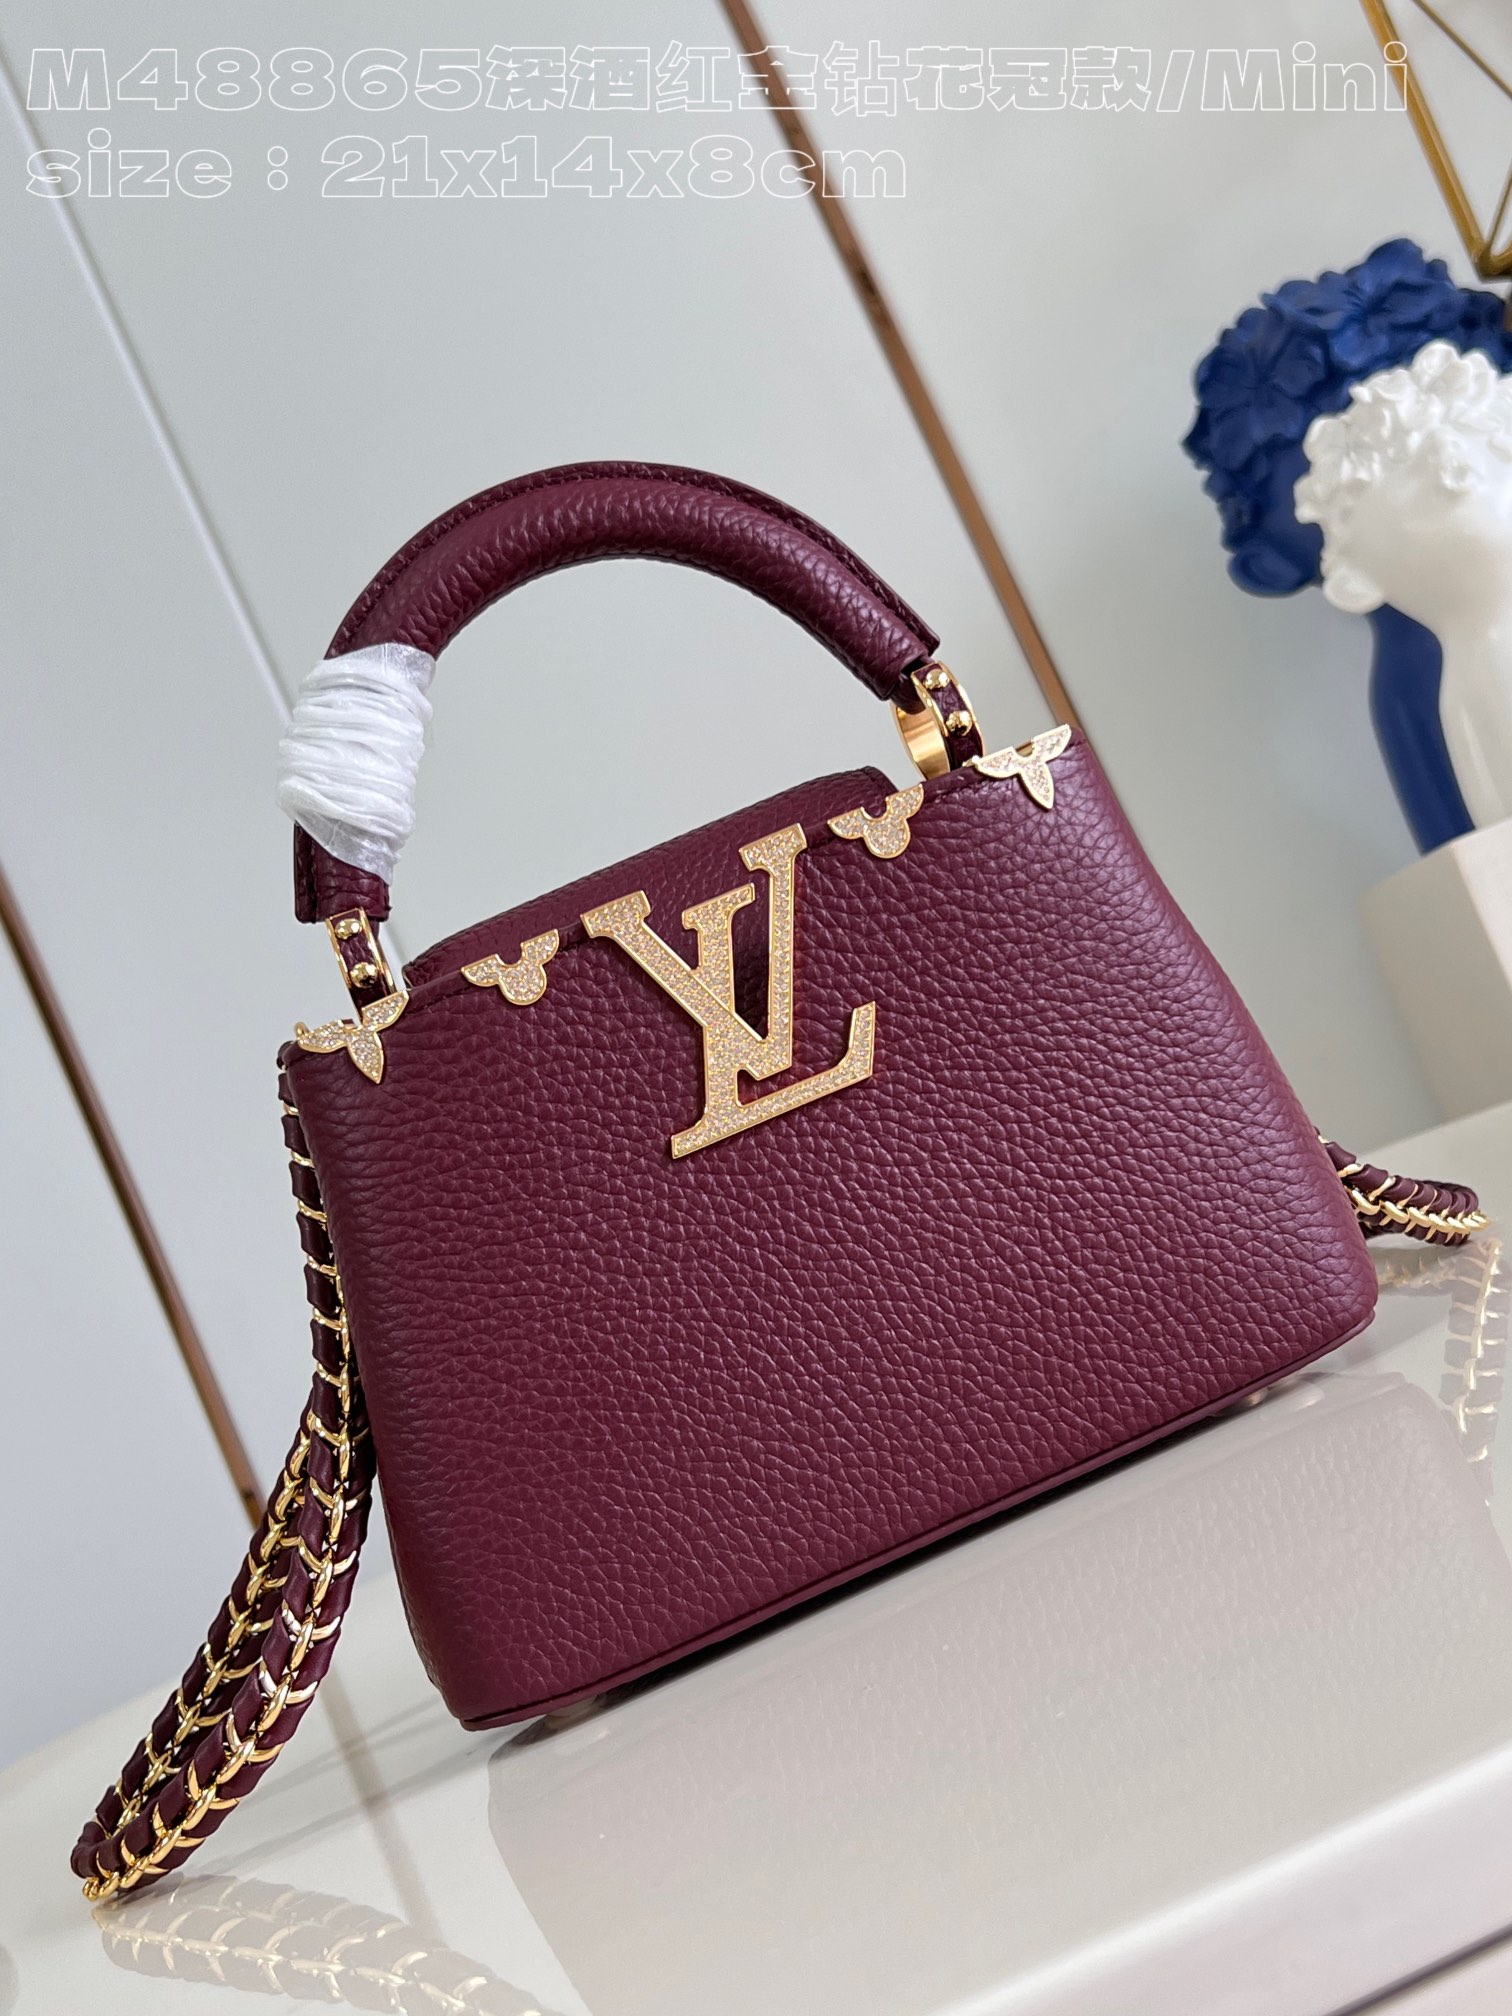 Louis Vuitton LV Capucines Bags Handbags Burgundy Red Calfskin Cowhide Mini M48865